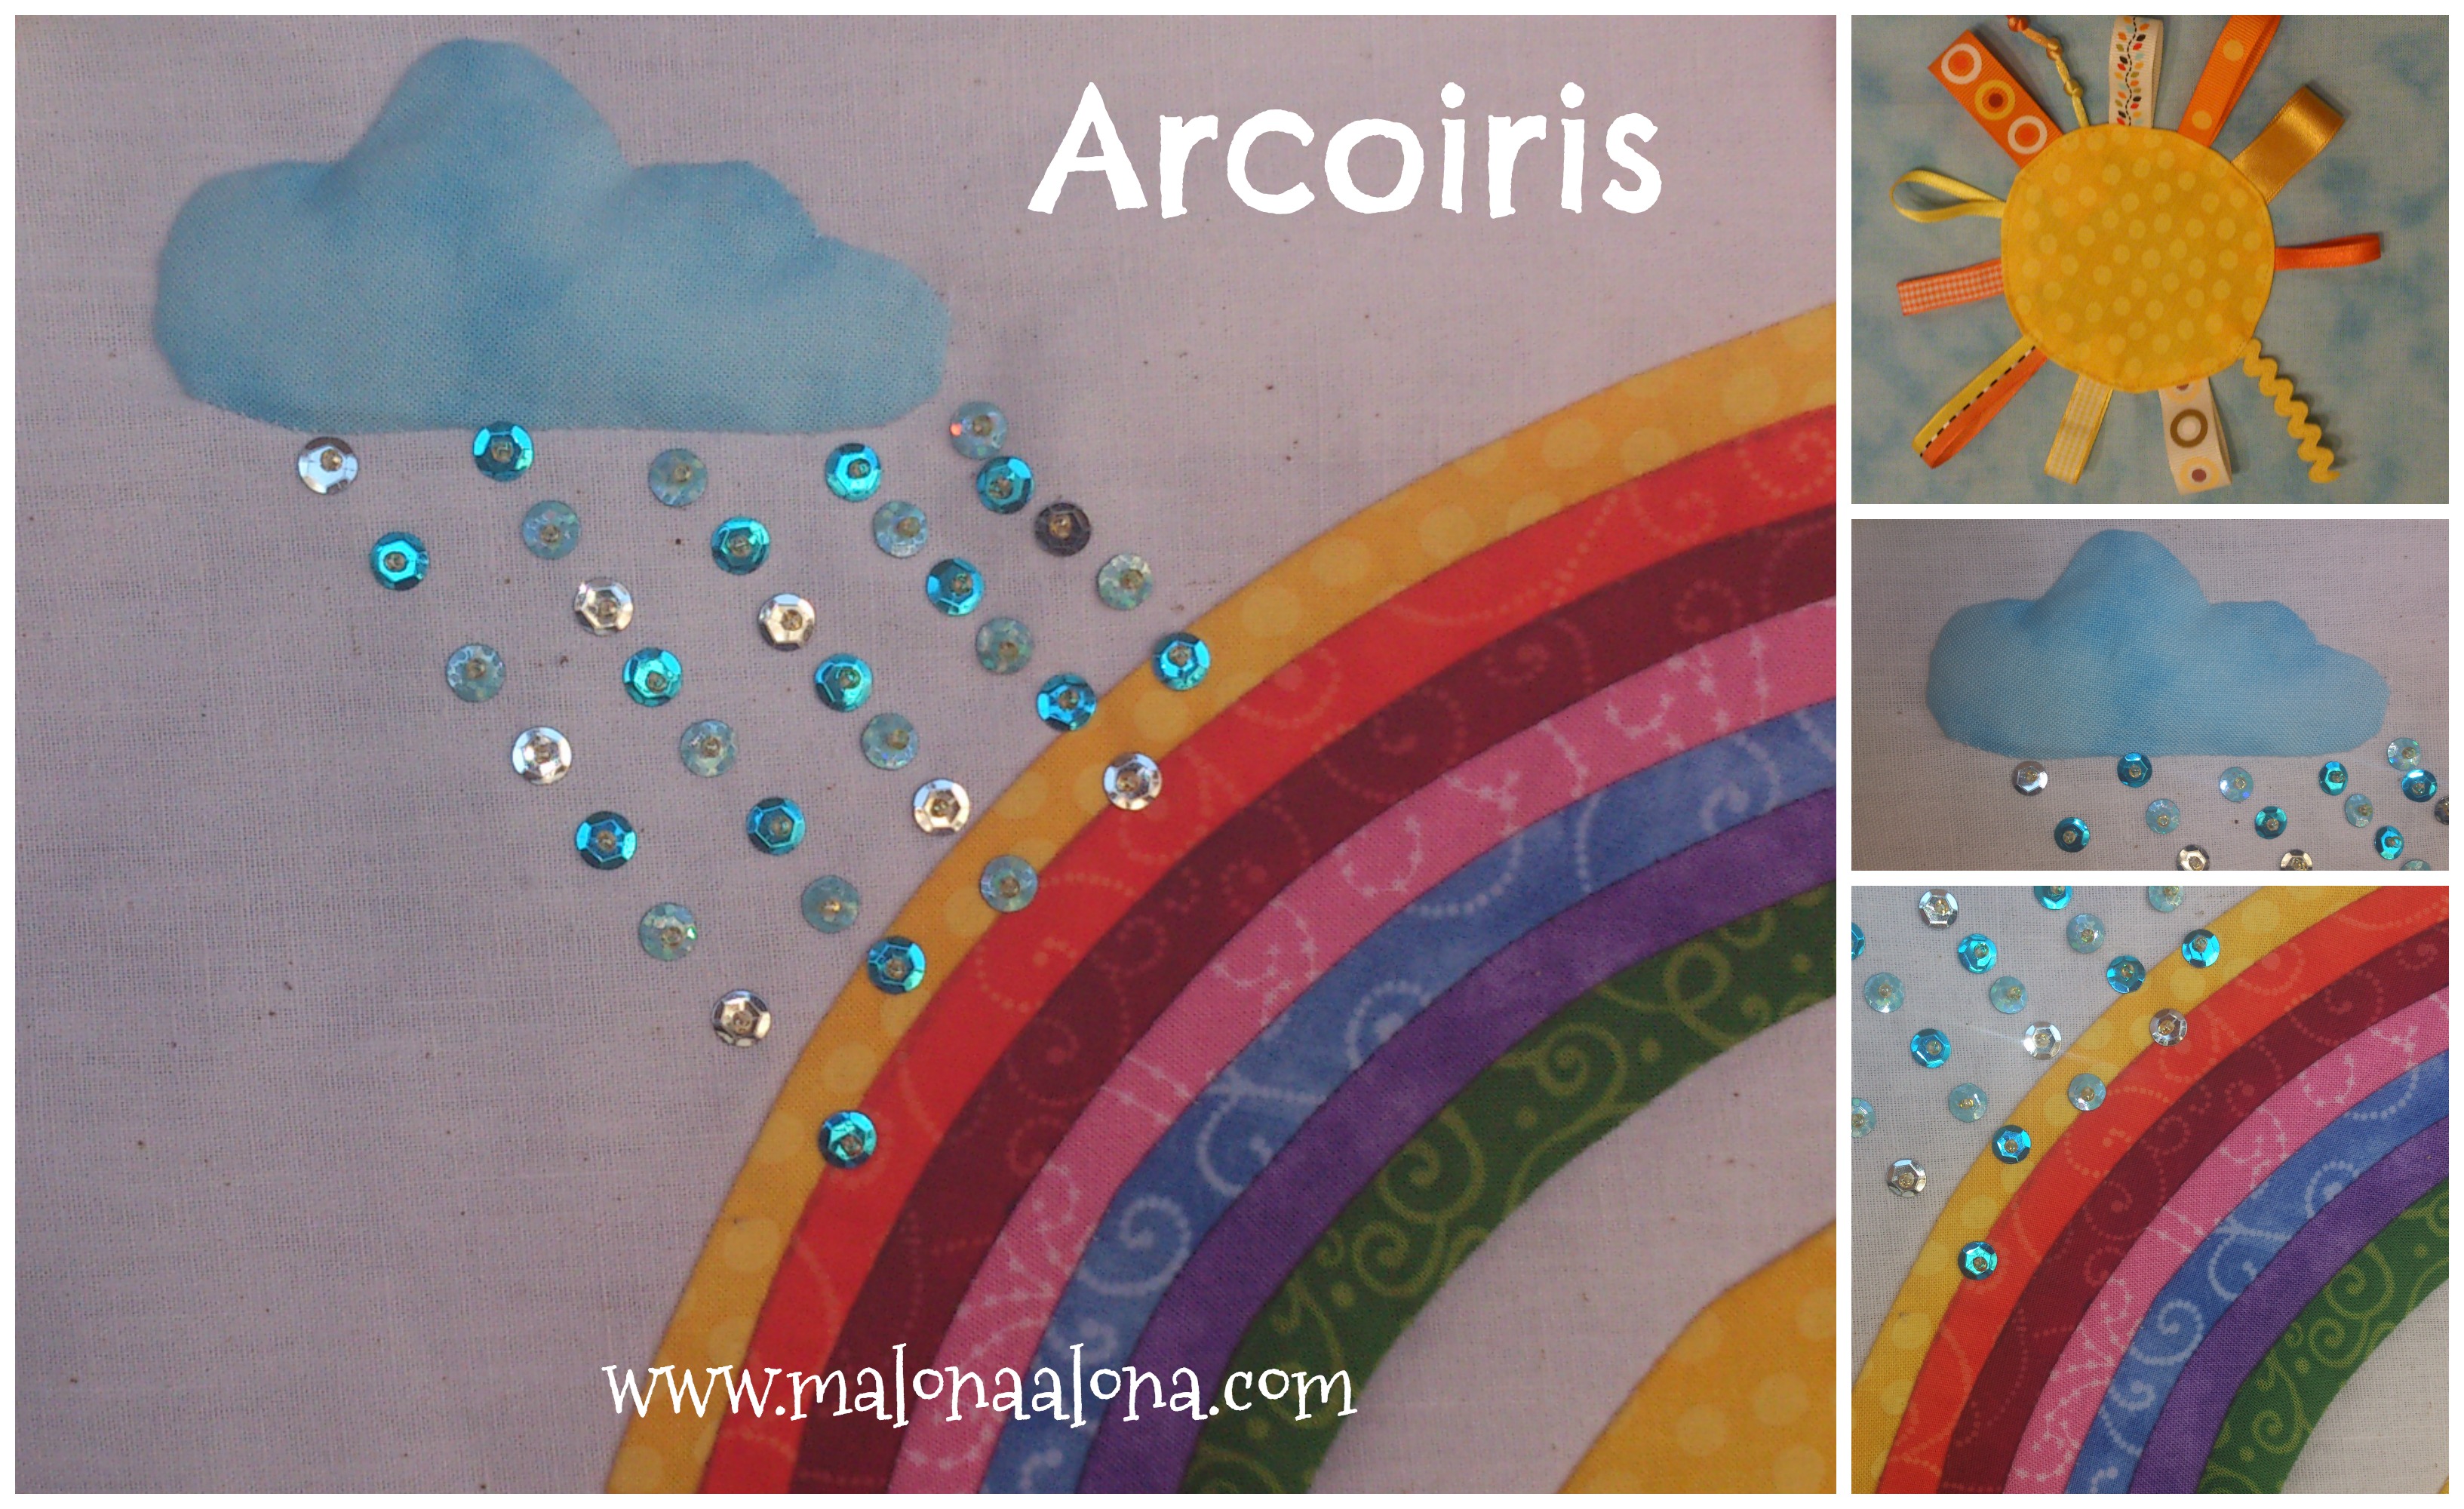 Arcoirirs